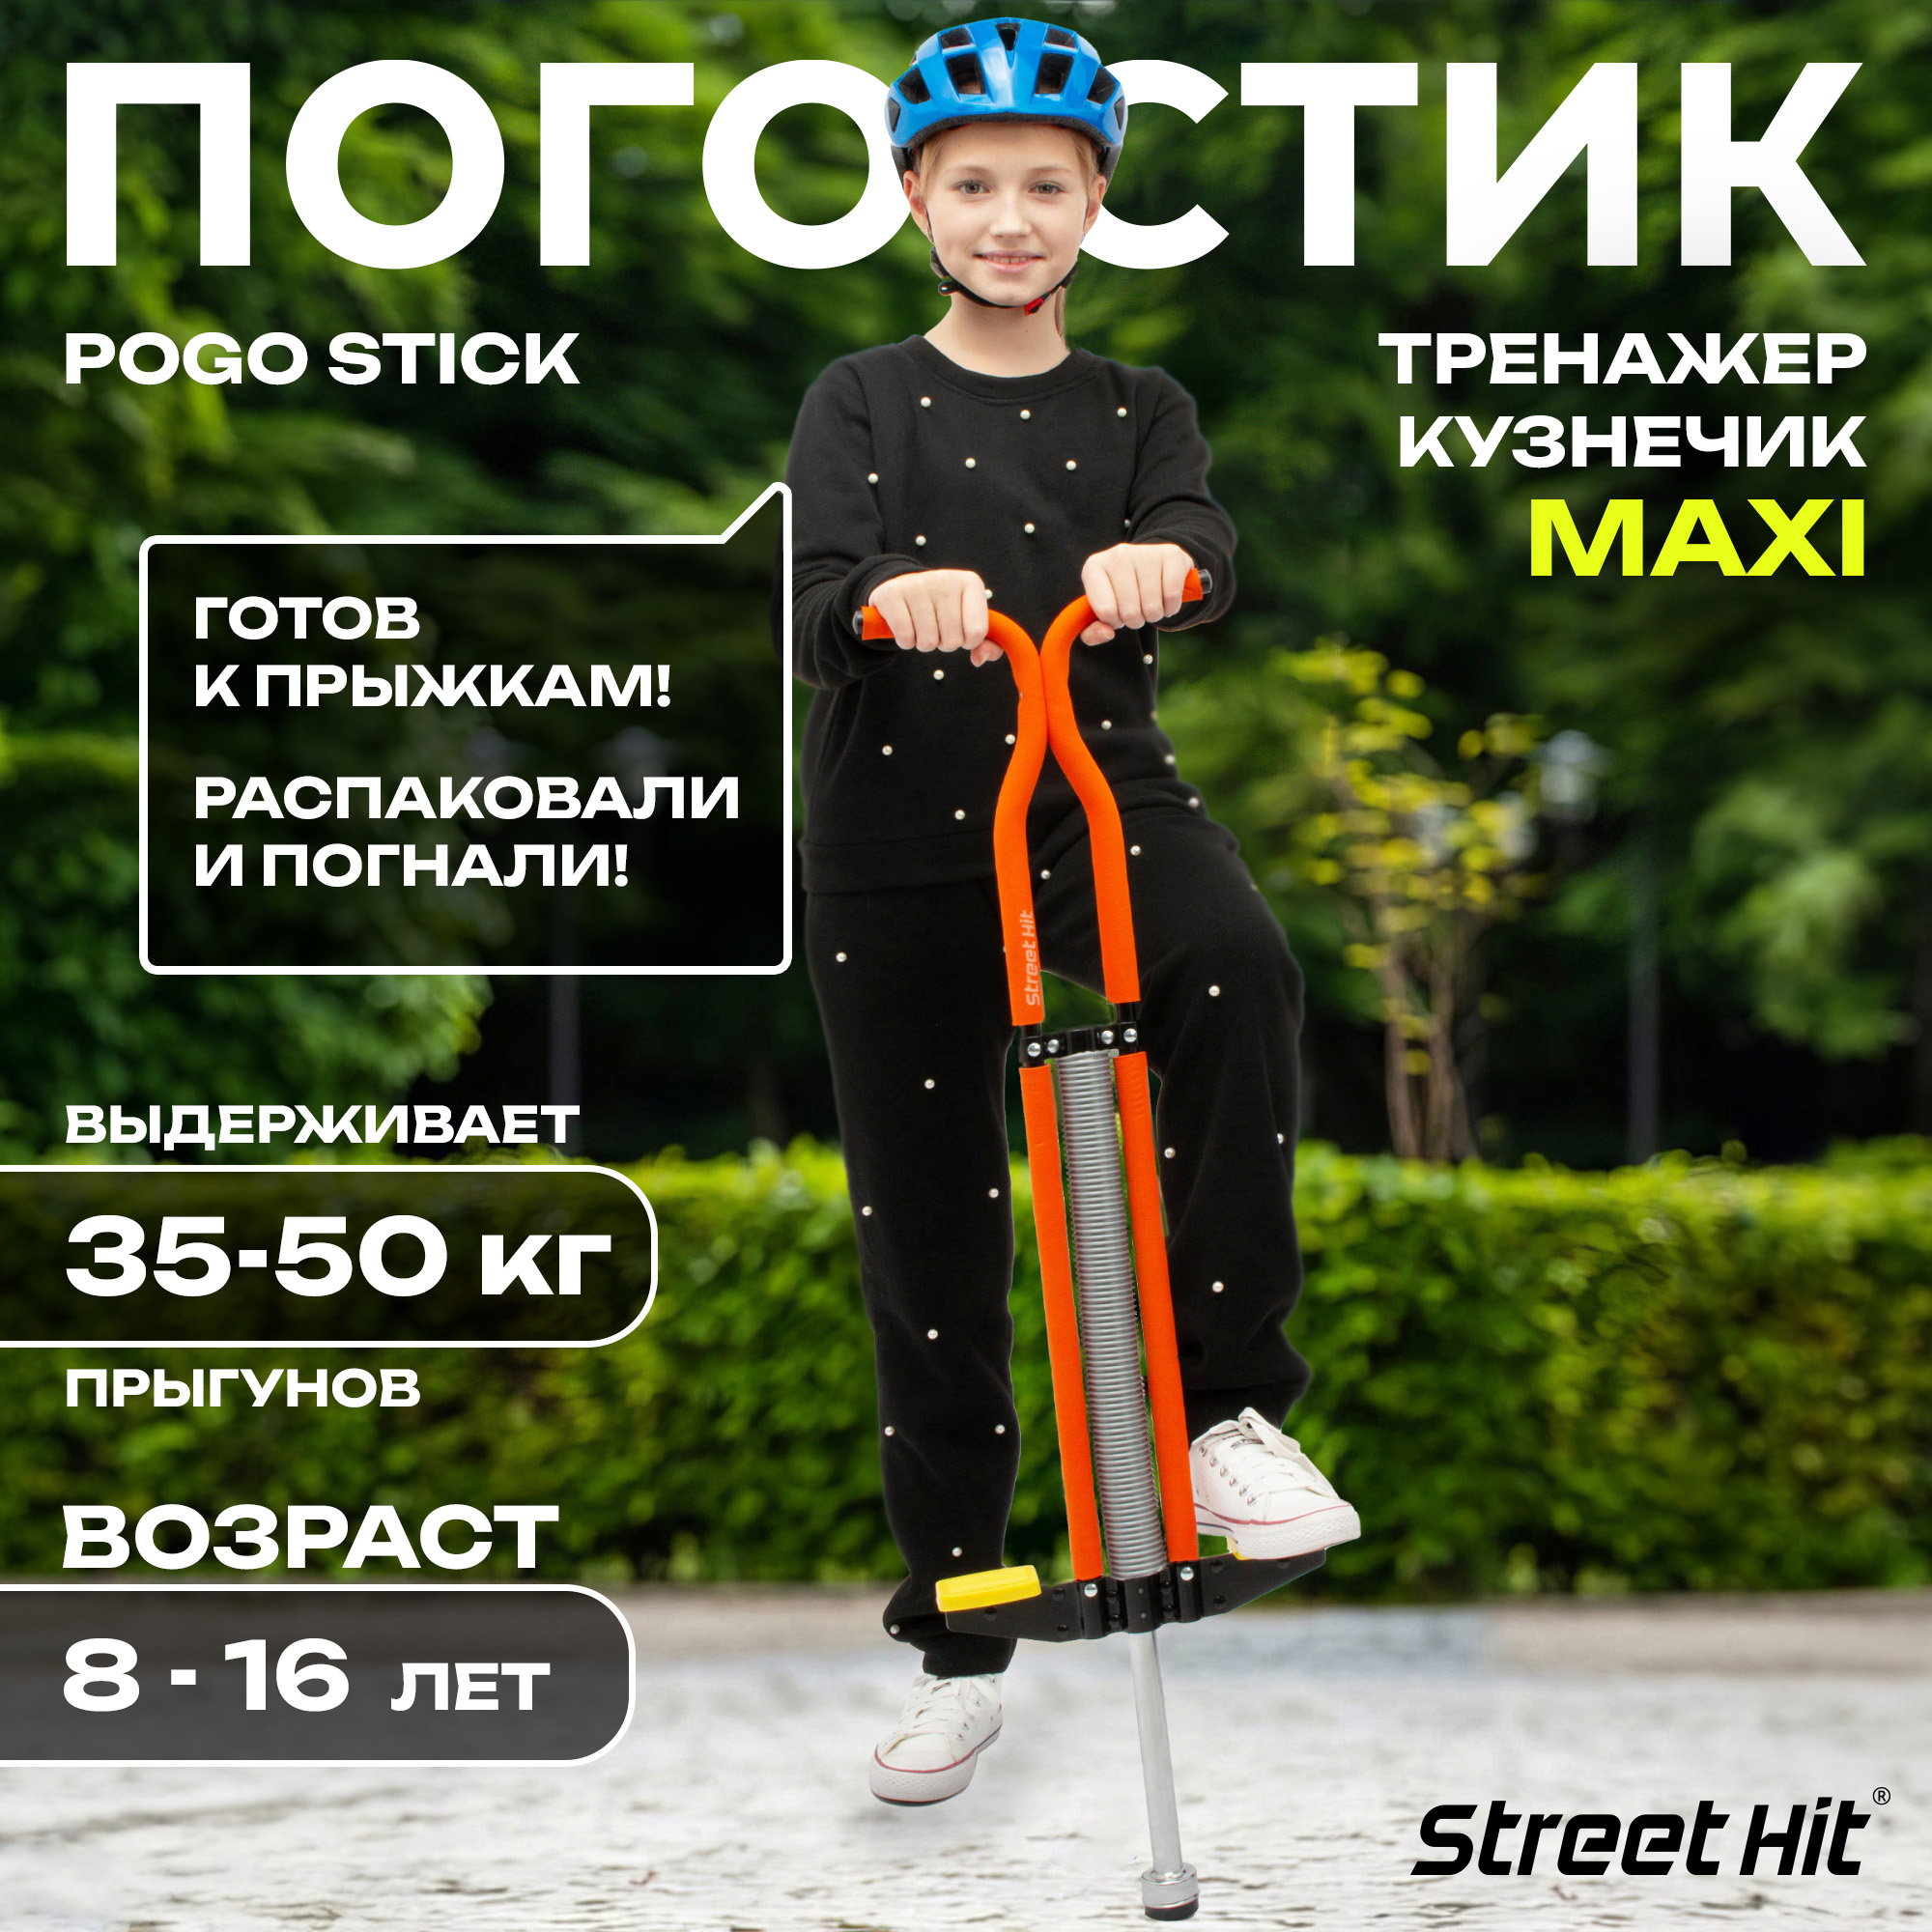 Тренажер кузнечик Street Hit Pogo Stick Maxi оранжевый T04-4 игрушка тренажер sportbaby прыгунки vip ип0003